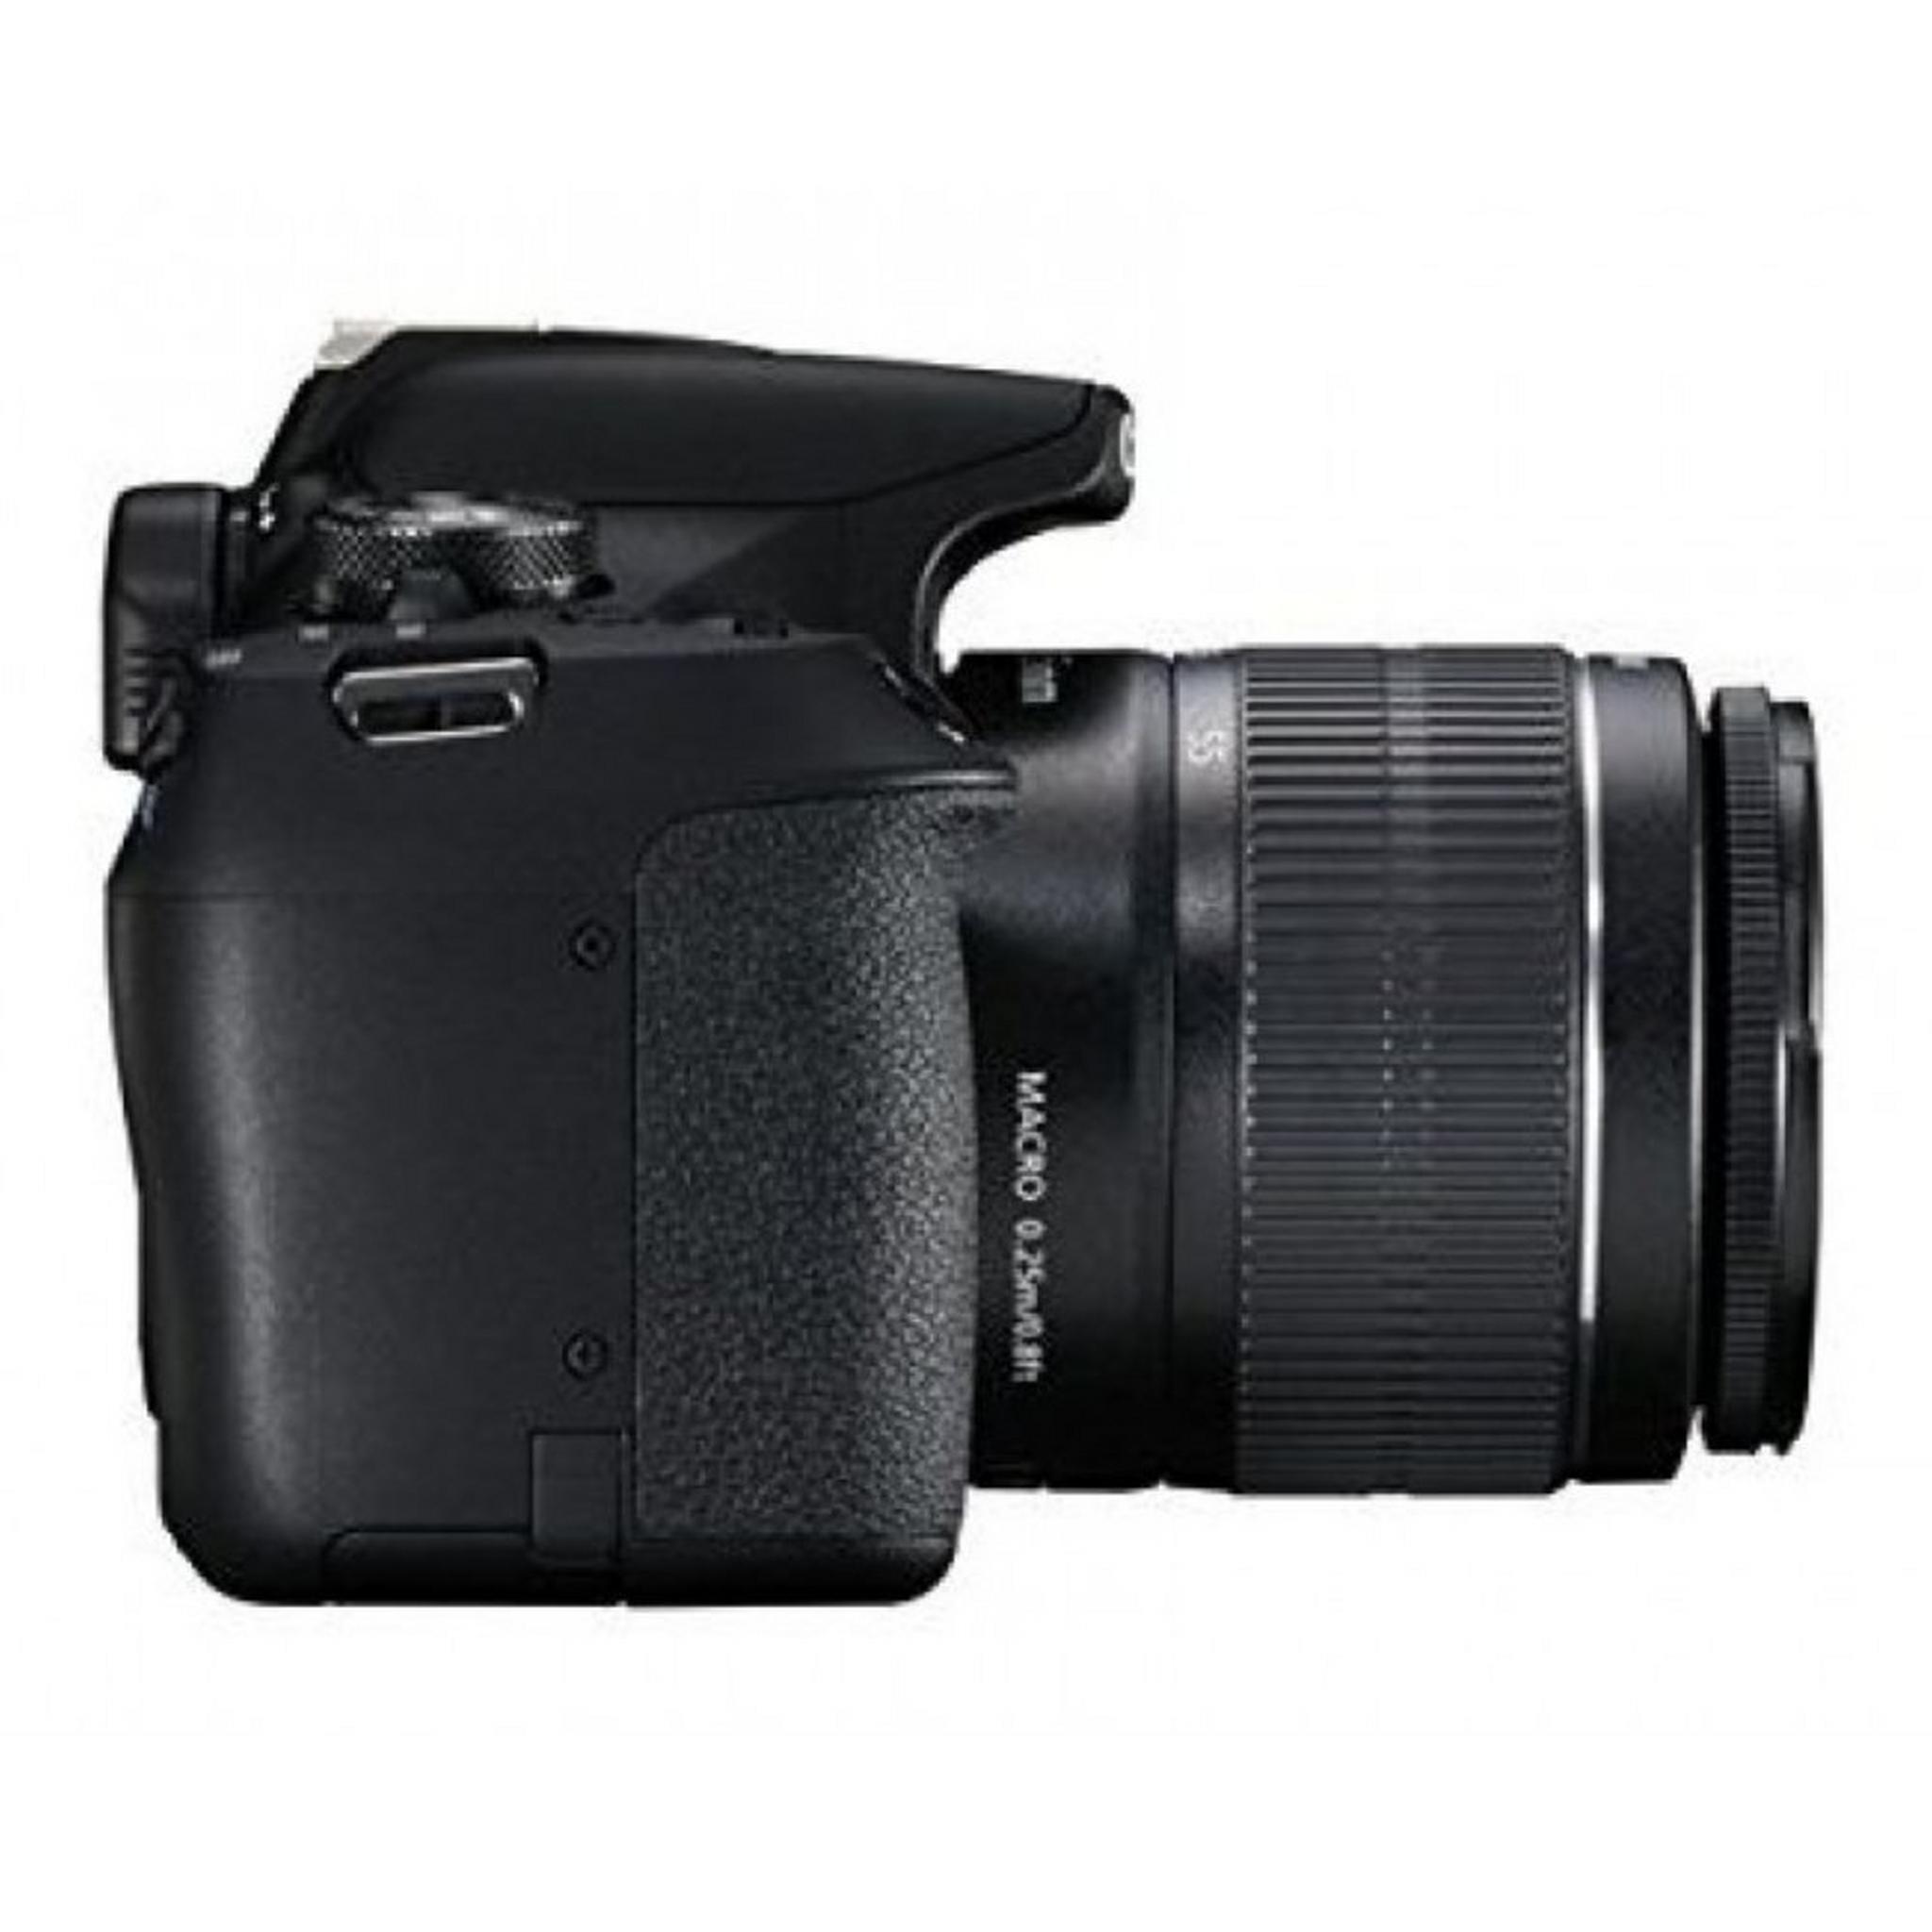 كاميرا كانون EOS 2000D الرقمية ذات العدسة الأحادية العاكسة DSLR مع عدسة 18 - 55 ملم أي اف + عدسة 50 1.8 CME